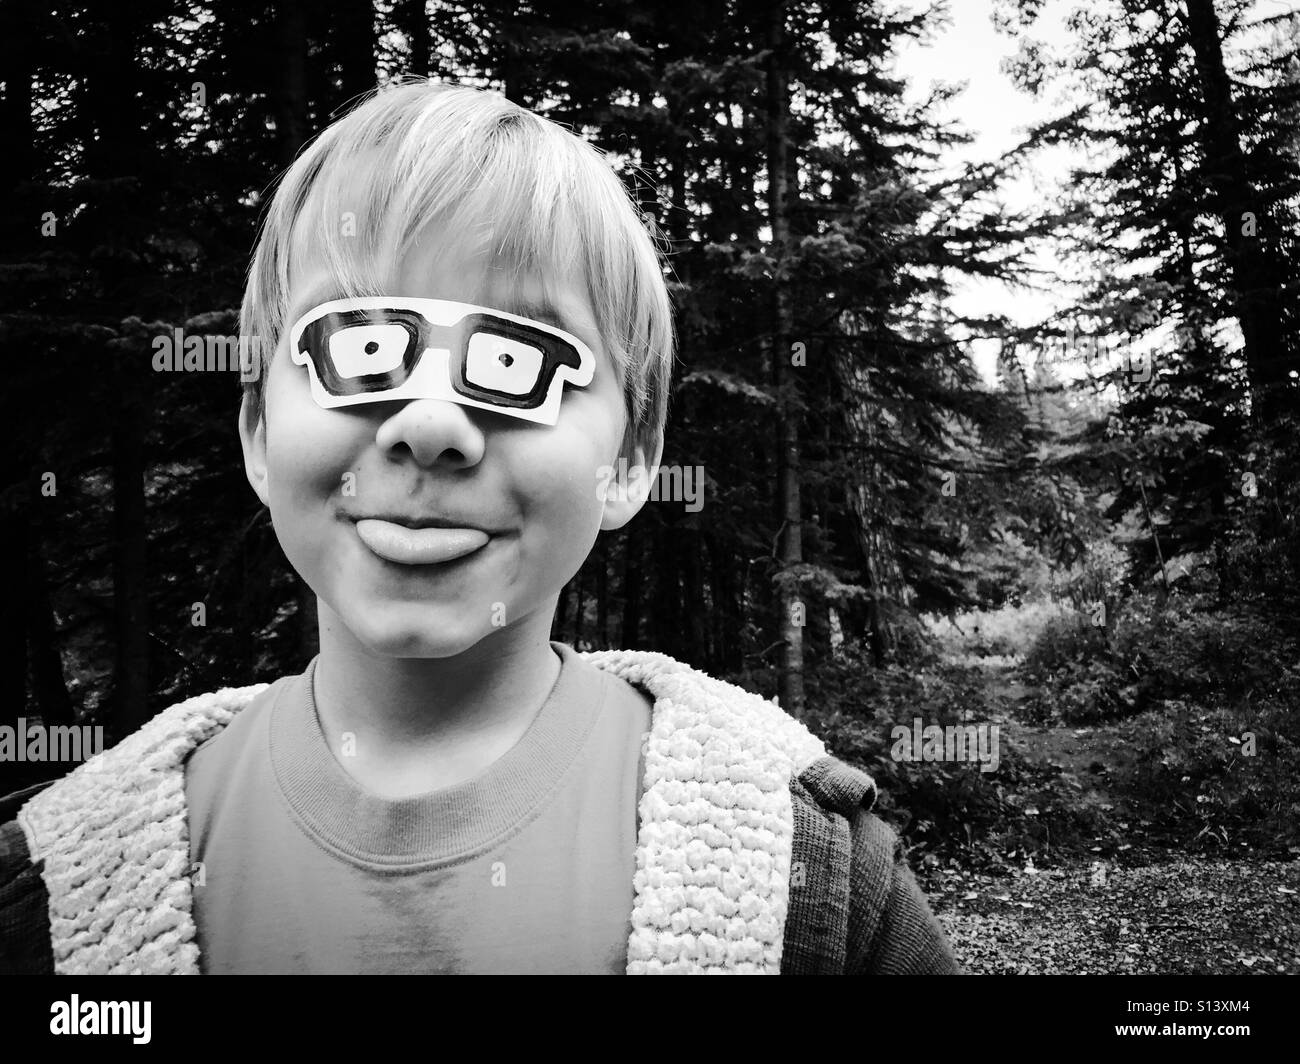 Un garçon tire sa langue tout en portant un autocollant ressemblant à des lunettes sur ses yeux. Banque D'Images